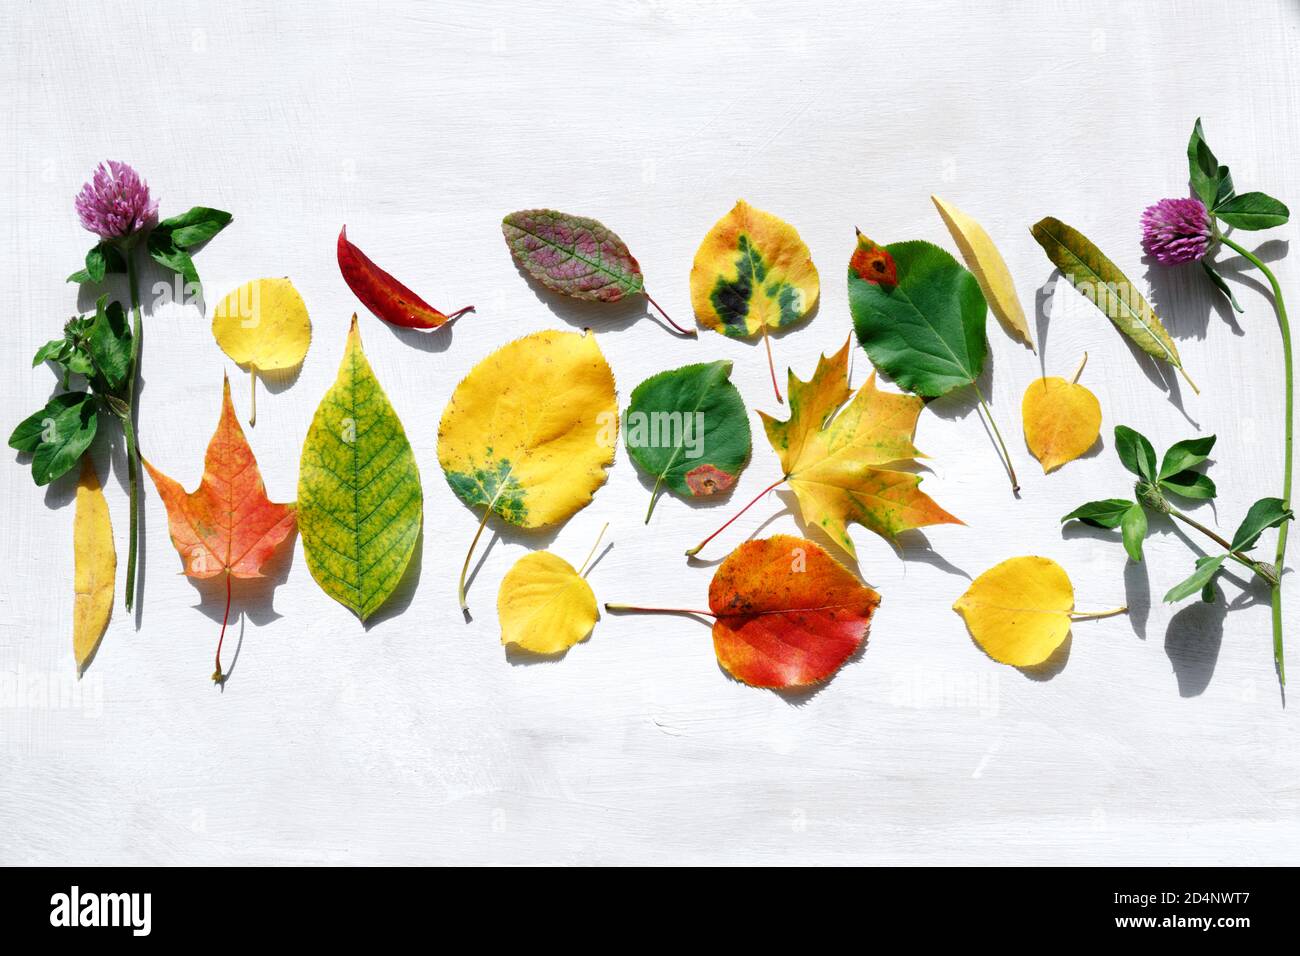 Las hojas de otoño de varios árboles están dispuestas en la superficie. Follaje rojo brillante, amarillo y verde para el herbario. Hora de Oro del otoño. Foto de stock